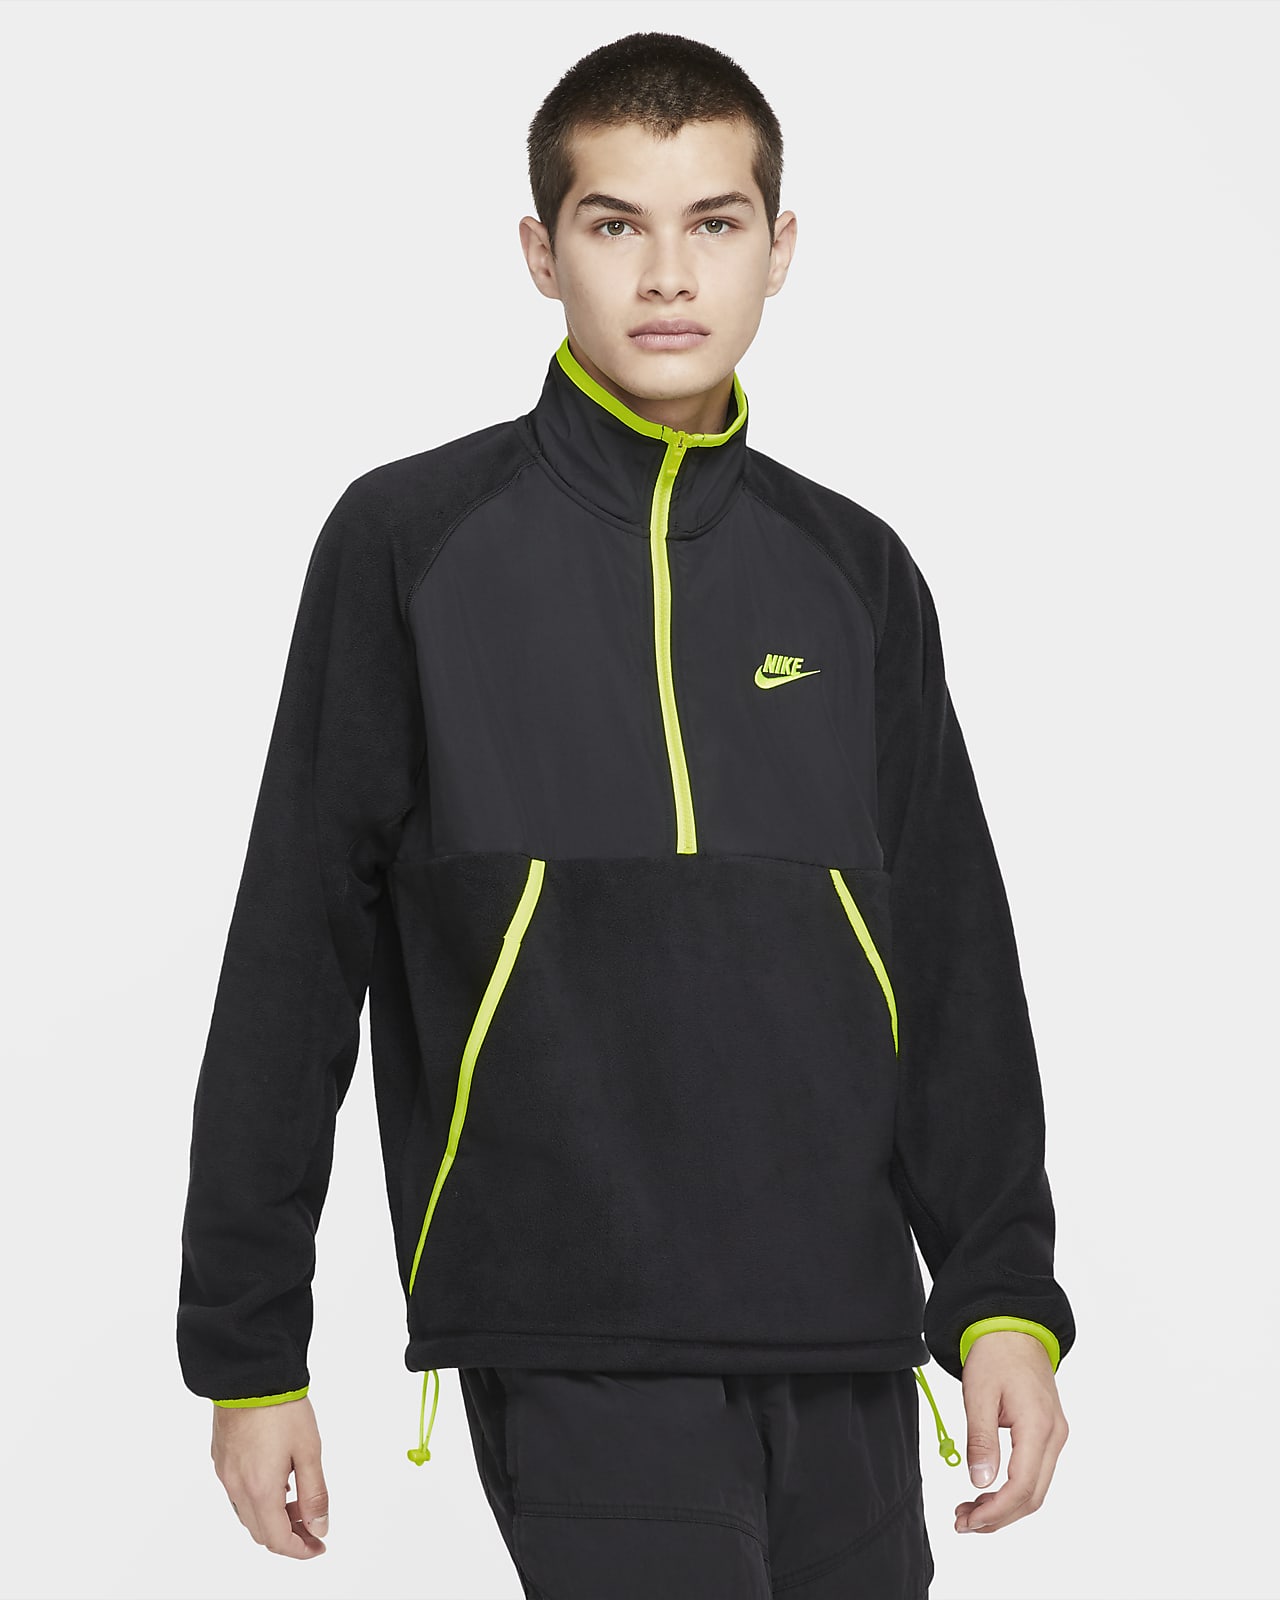 Nike Sportswear Men's Winterized Half-Zip Top